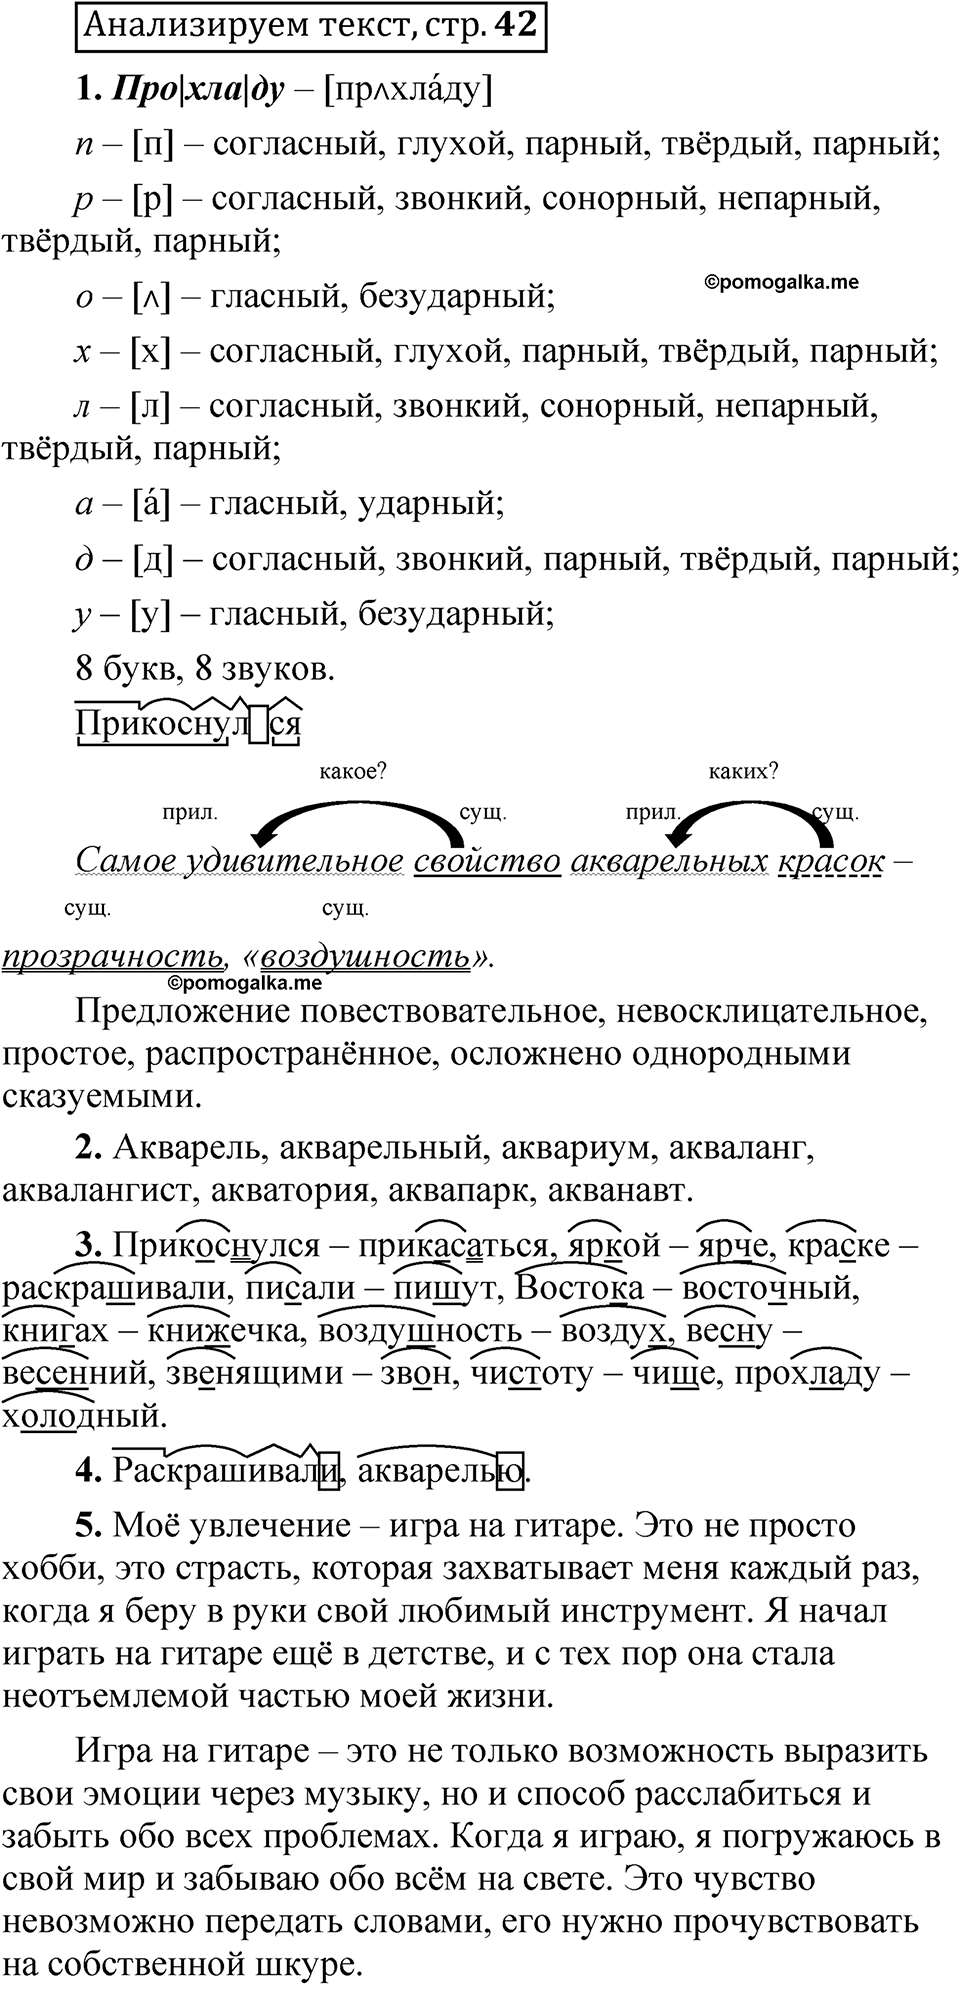 страница 42 Анализируем текст русский язык 5 класс Быстрова, Кибирева 2 часть 2021 год